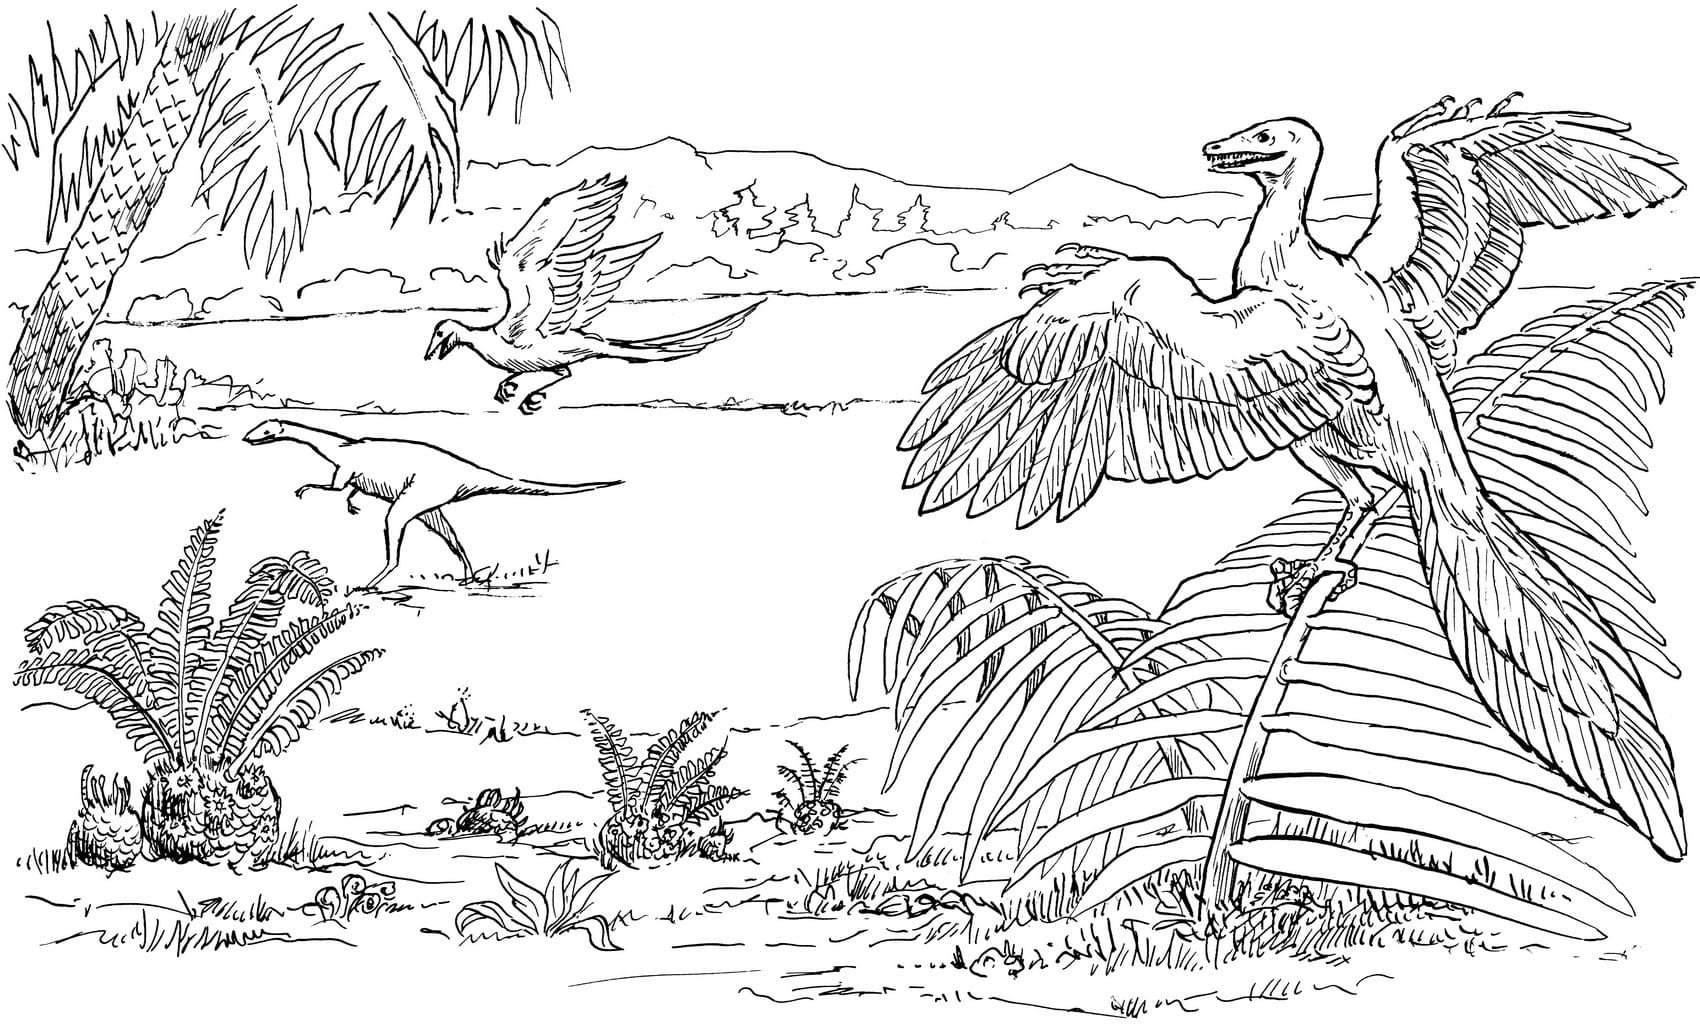 Археоптерикс фауна Юрского периода